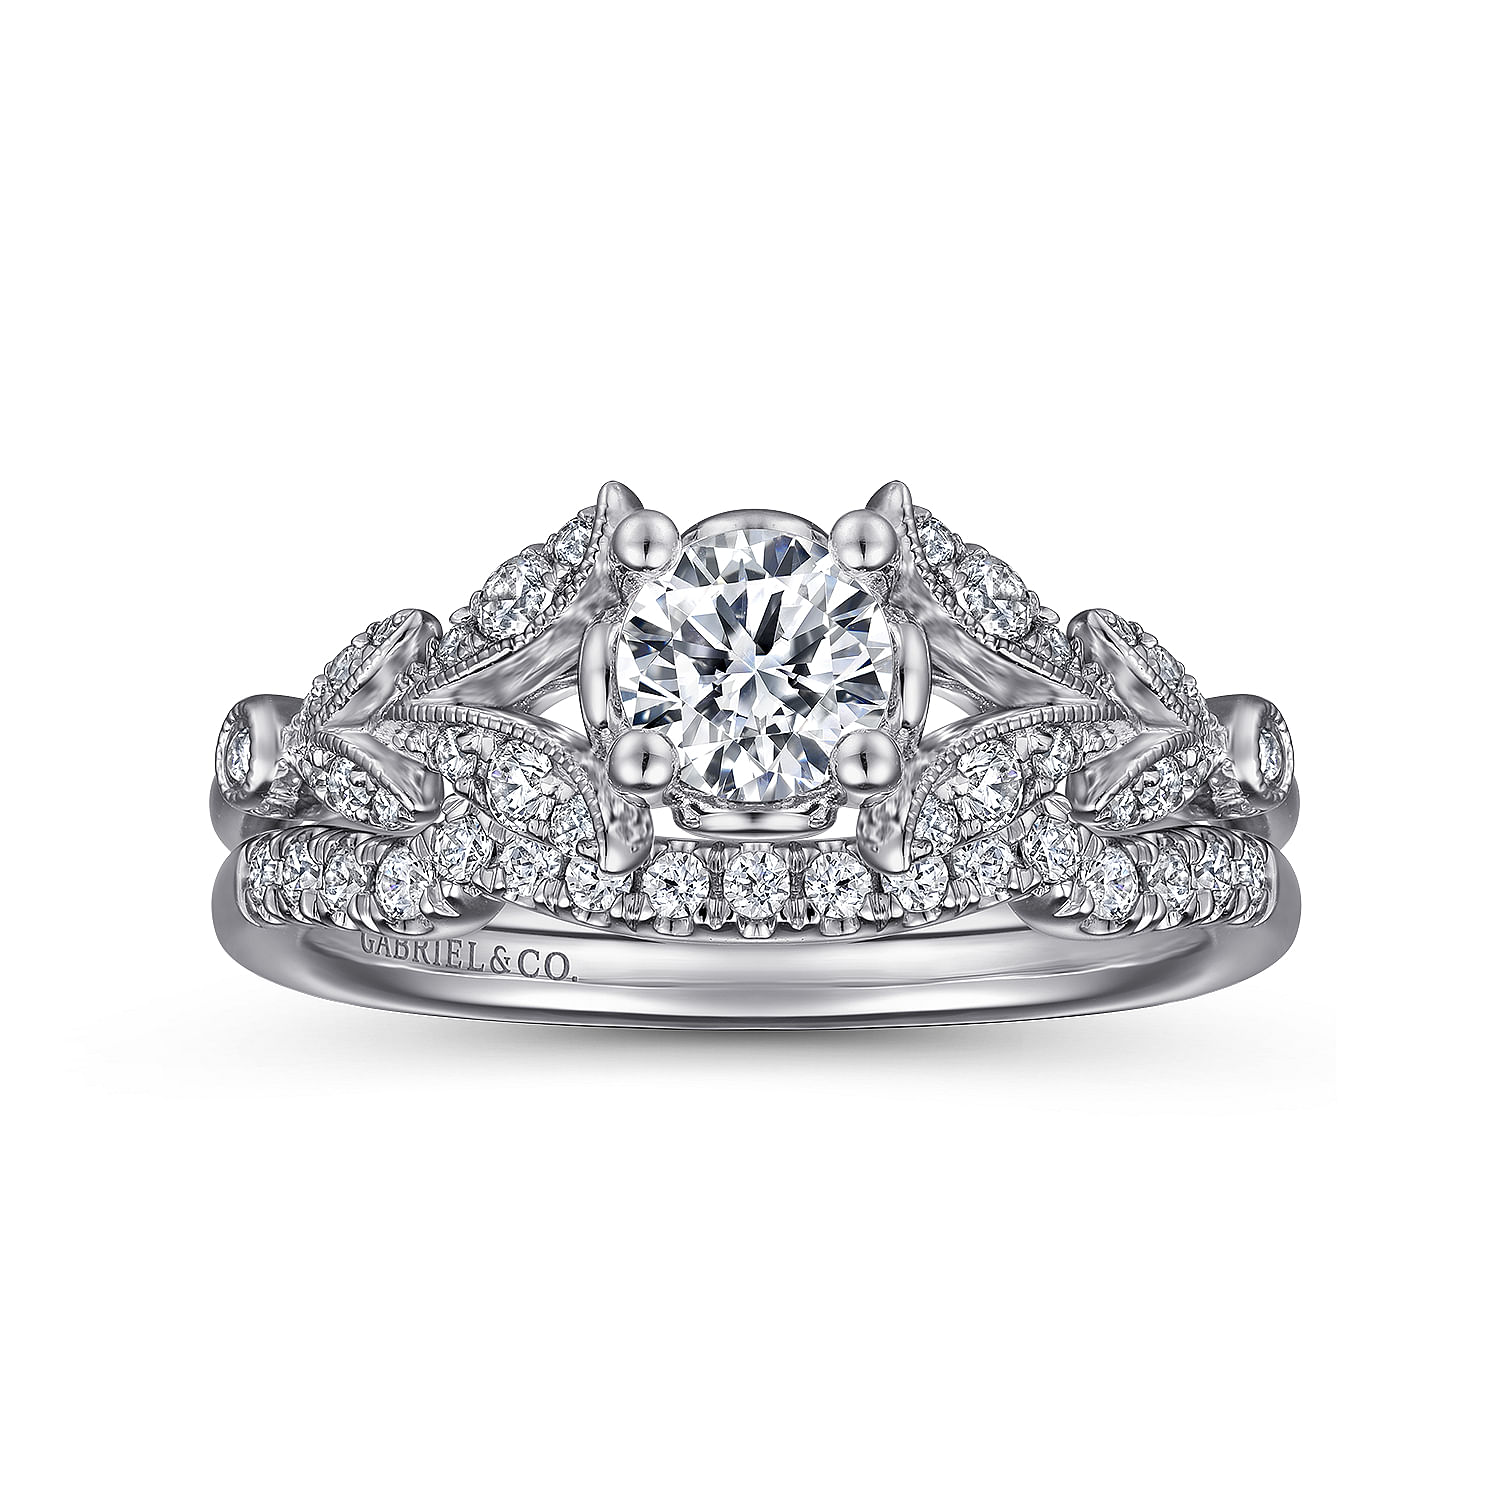 Vintage Inspired 14K White Gold Split Shank Round Diamond Engagement Ring